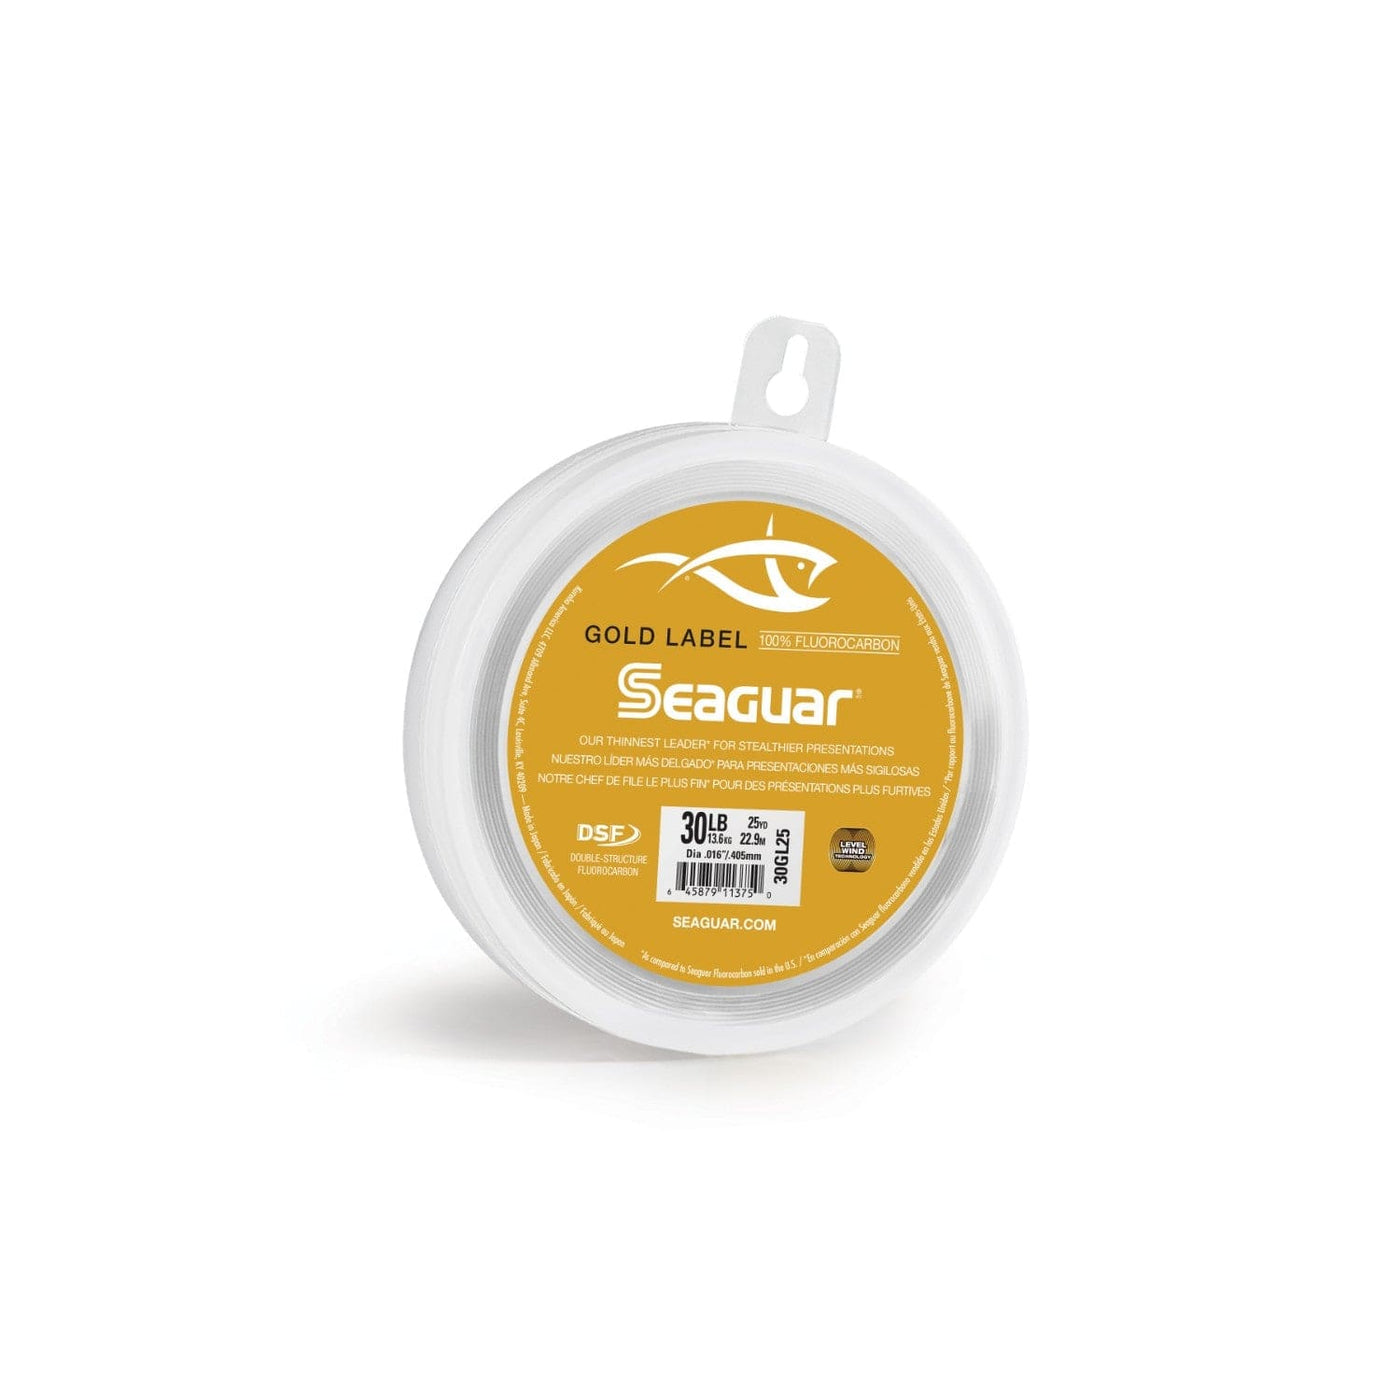 Seaguar Seaguar Gold Label 25 30GL25 Flourocarbon Leader Fishing